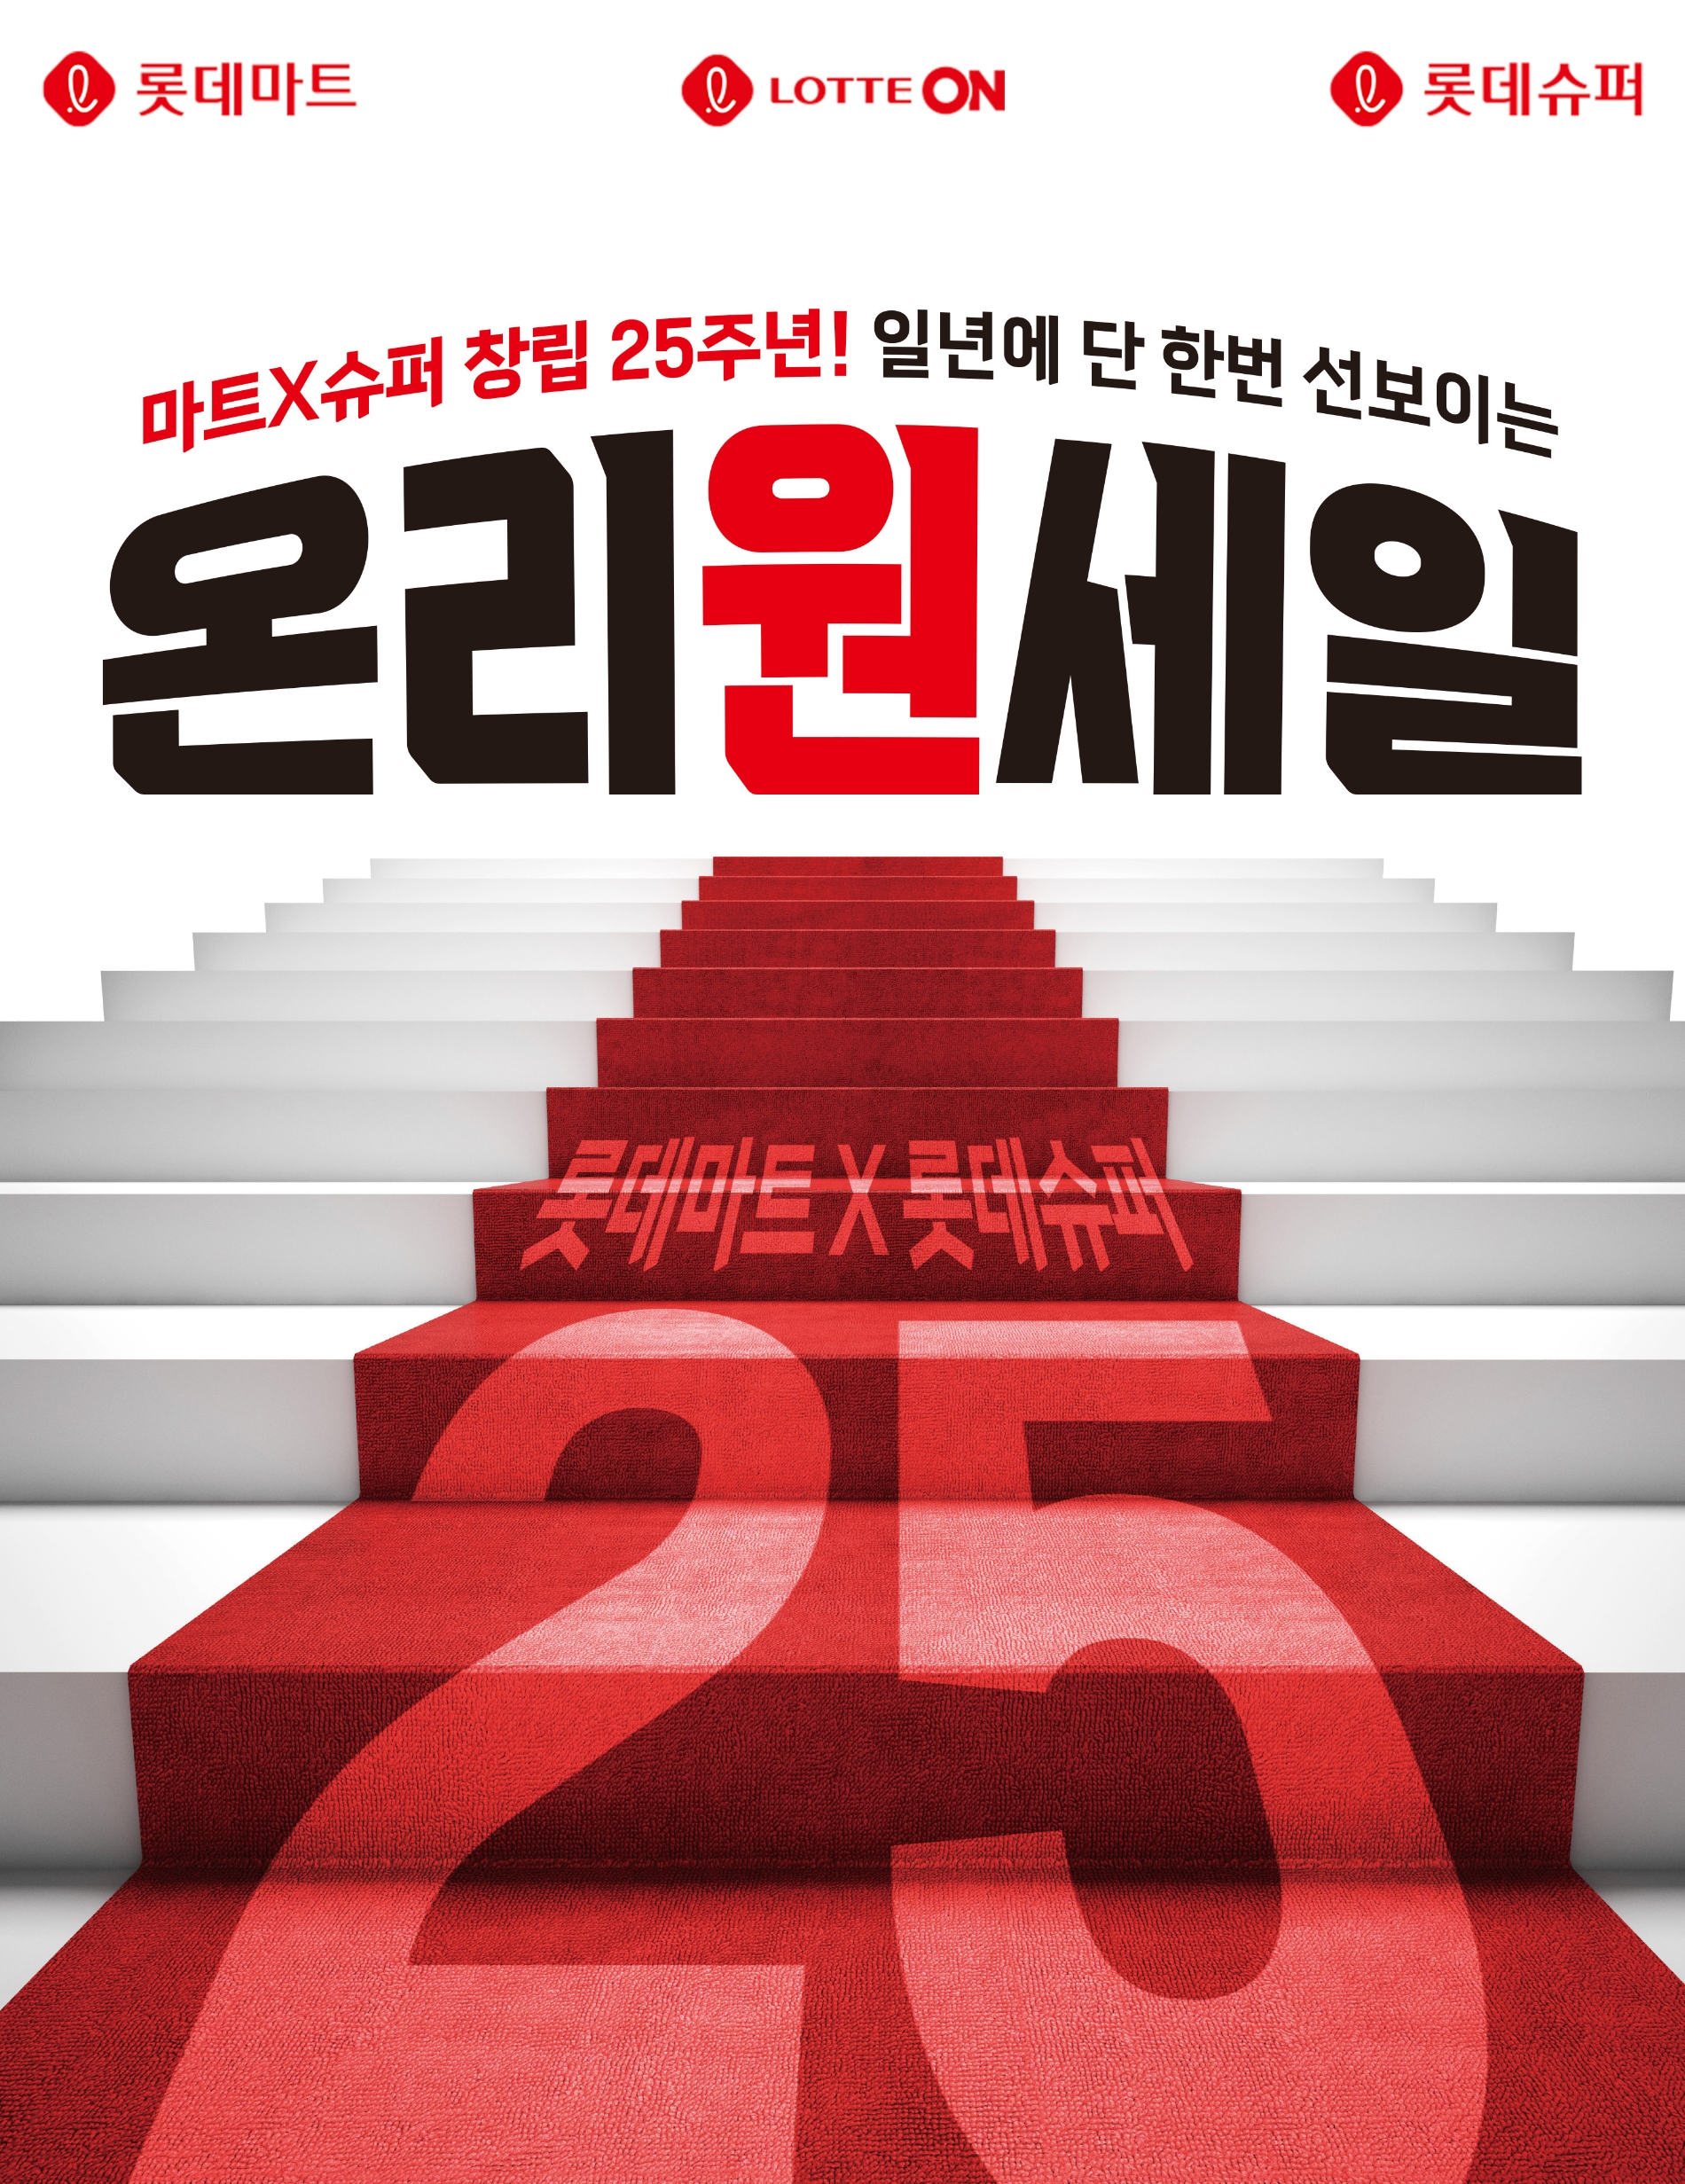 롯데마트와 슈퍼가 창립 25주년을 맞아 '온리원세일'을 개최한다. /사진제공=롯데마트 